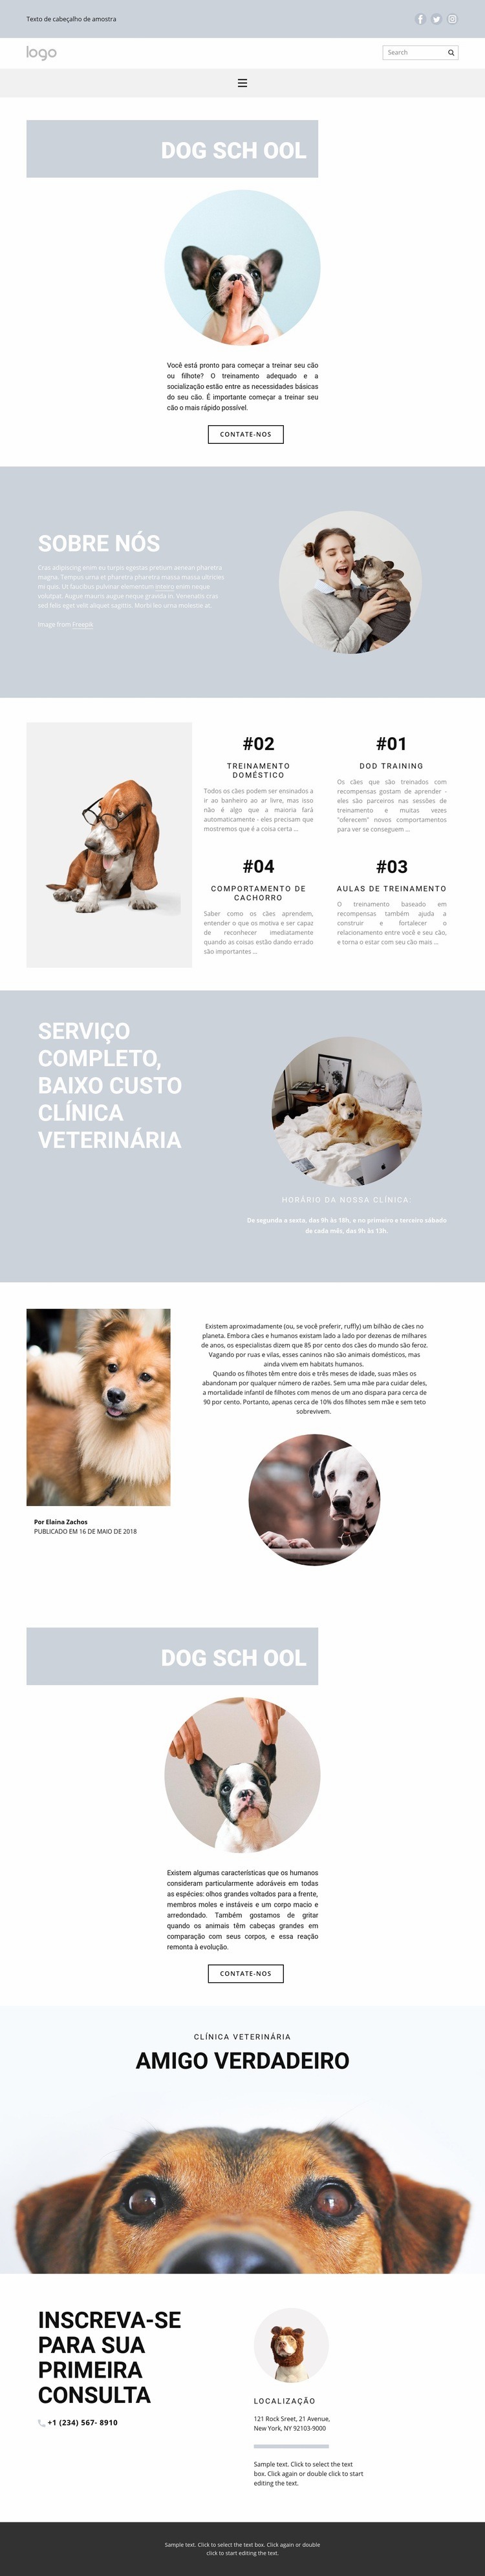 Criação de cães Design do site